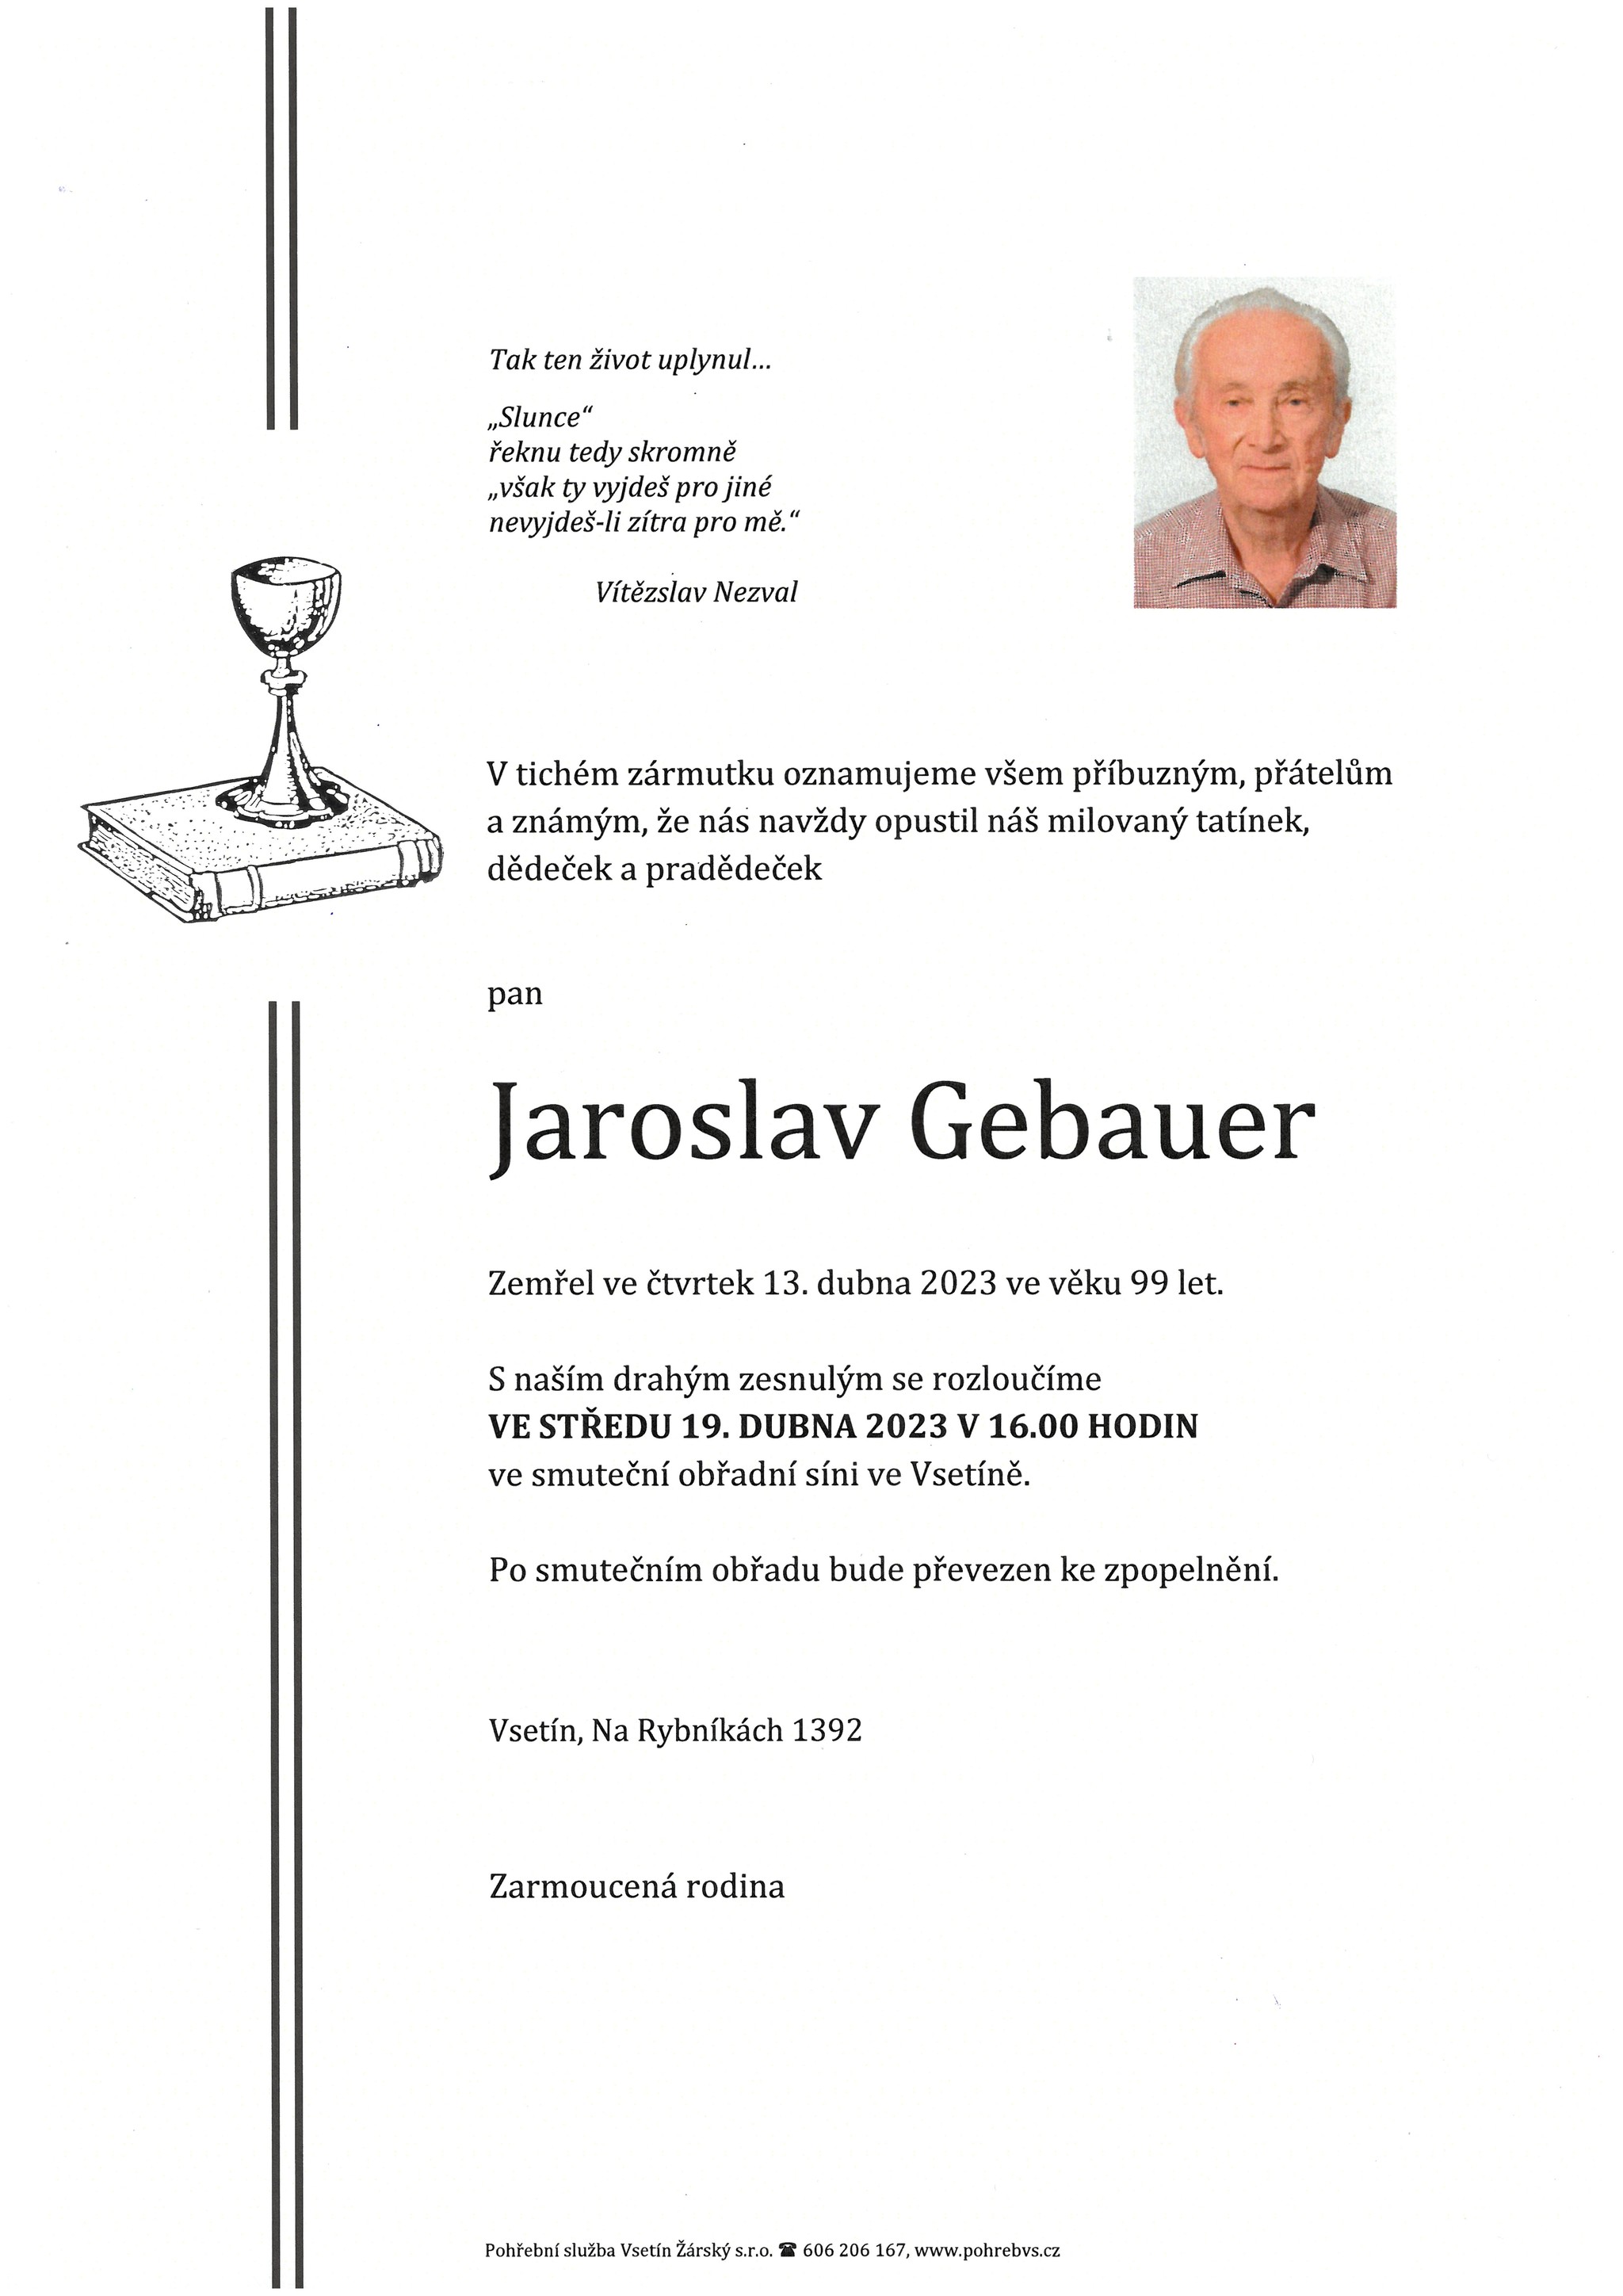 Jaroslav Gebauer